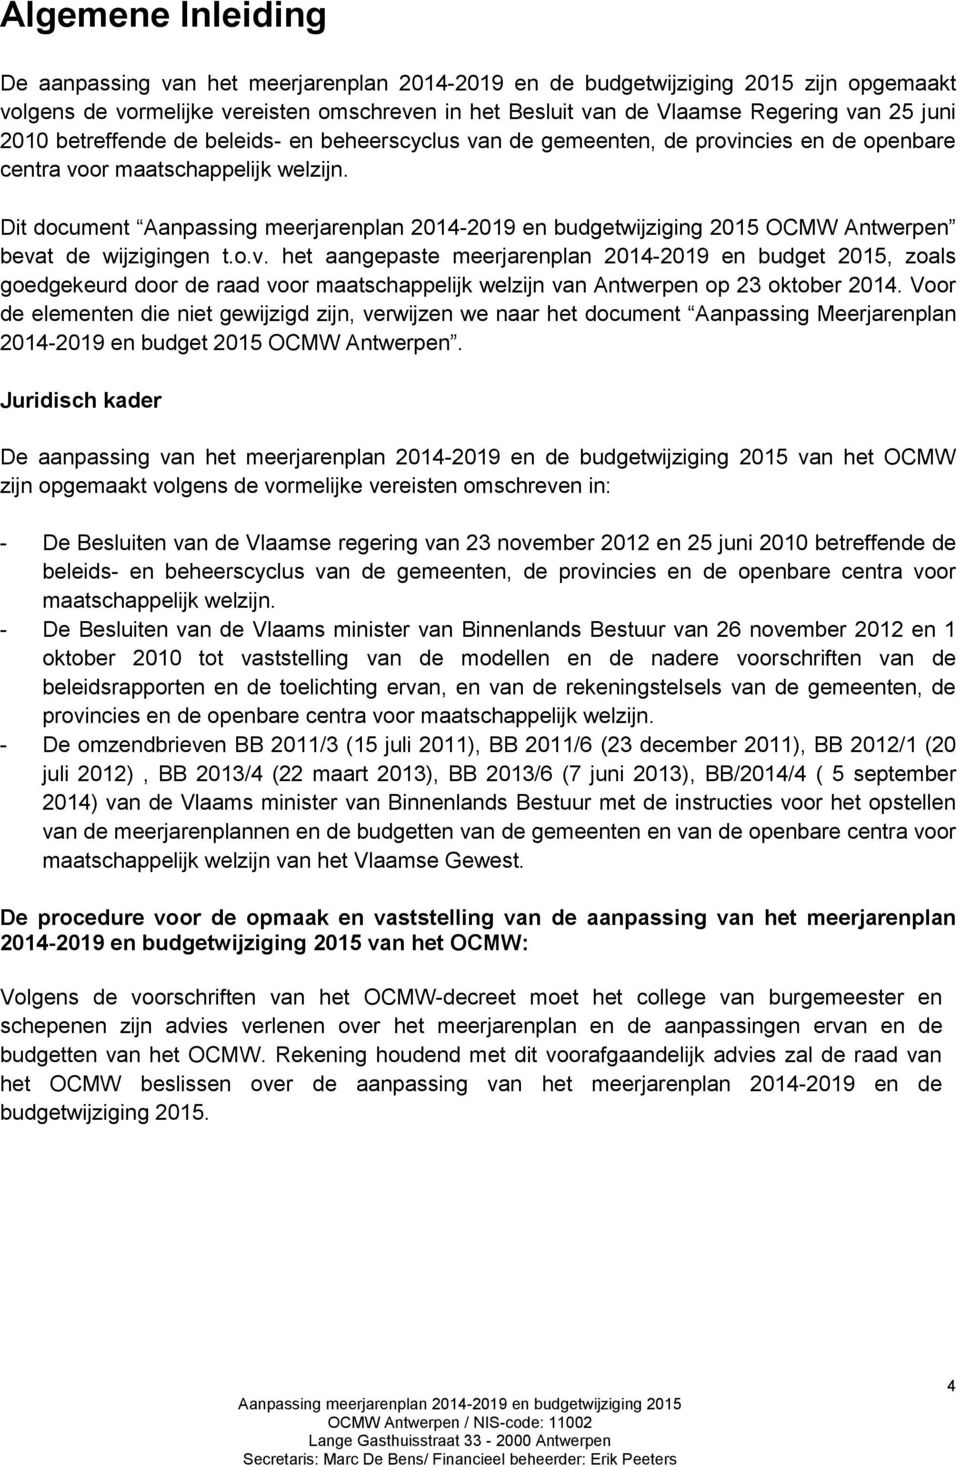 n de gemeenten, de provincies en de openbare centra voor maatschappelijk welzijn. Dit document OCMW Antwerpen bevat de wijzigingen t.o.v. het aangepaste meerjarenplan 2014-2019 en budget 2015, zoals goedgekeurd door de raad voor maatschappelijk welzijn van Antwerpen op 23 oktober 2014.